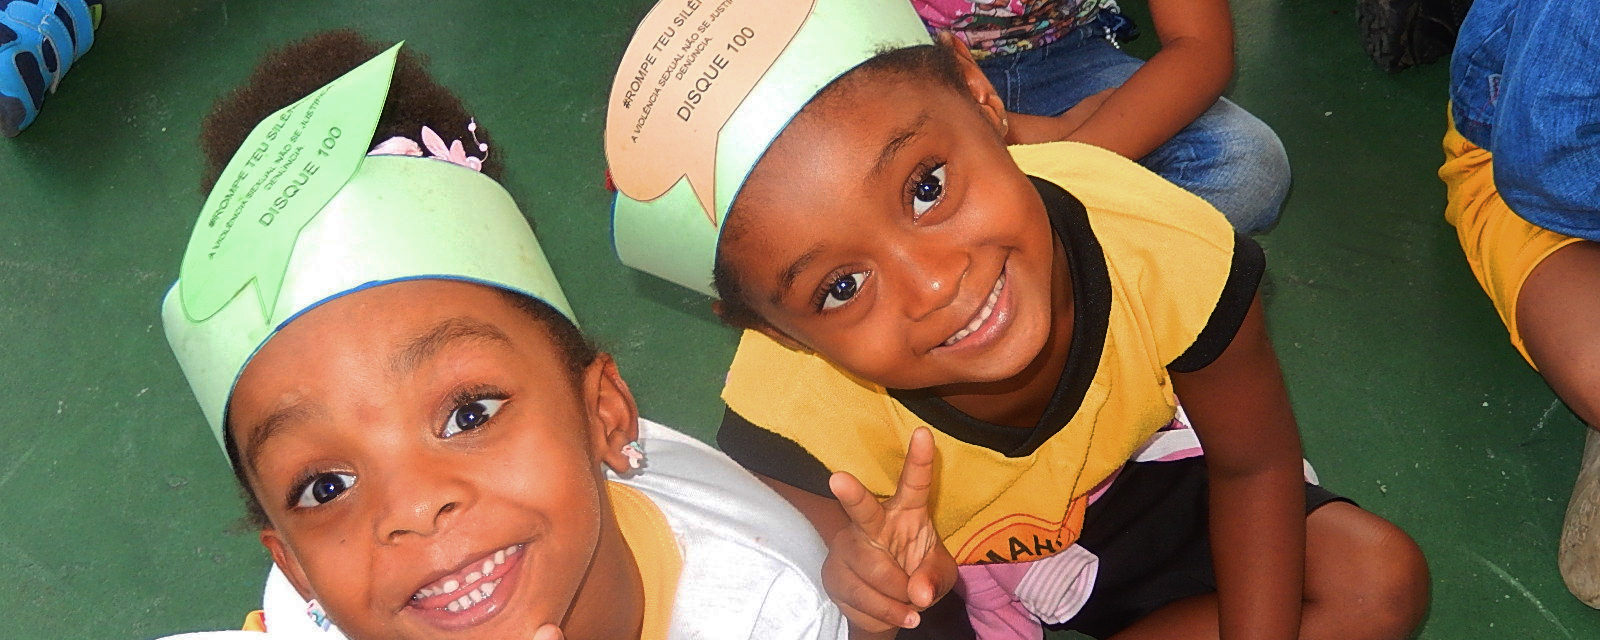 Na foto estão duas crianças sorrindo. A câmera está posicionada no alto. As crianças usam uma faixa de papel em volta da cabeça.